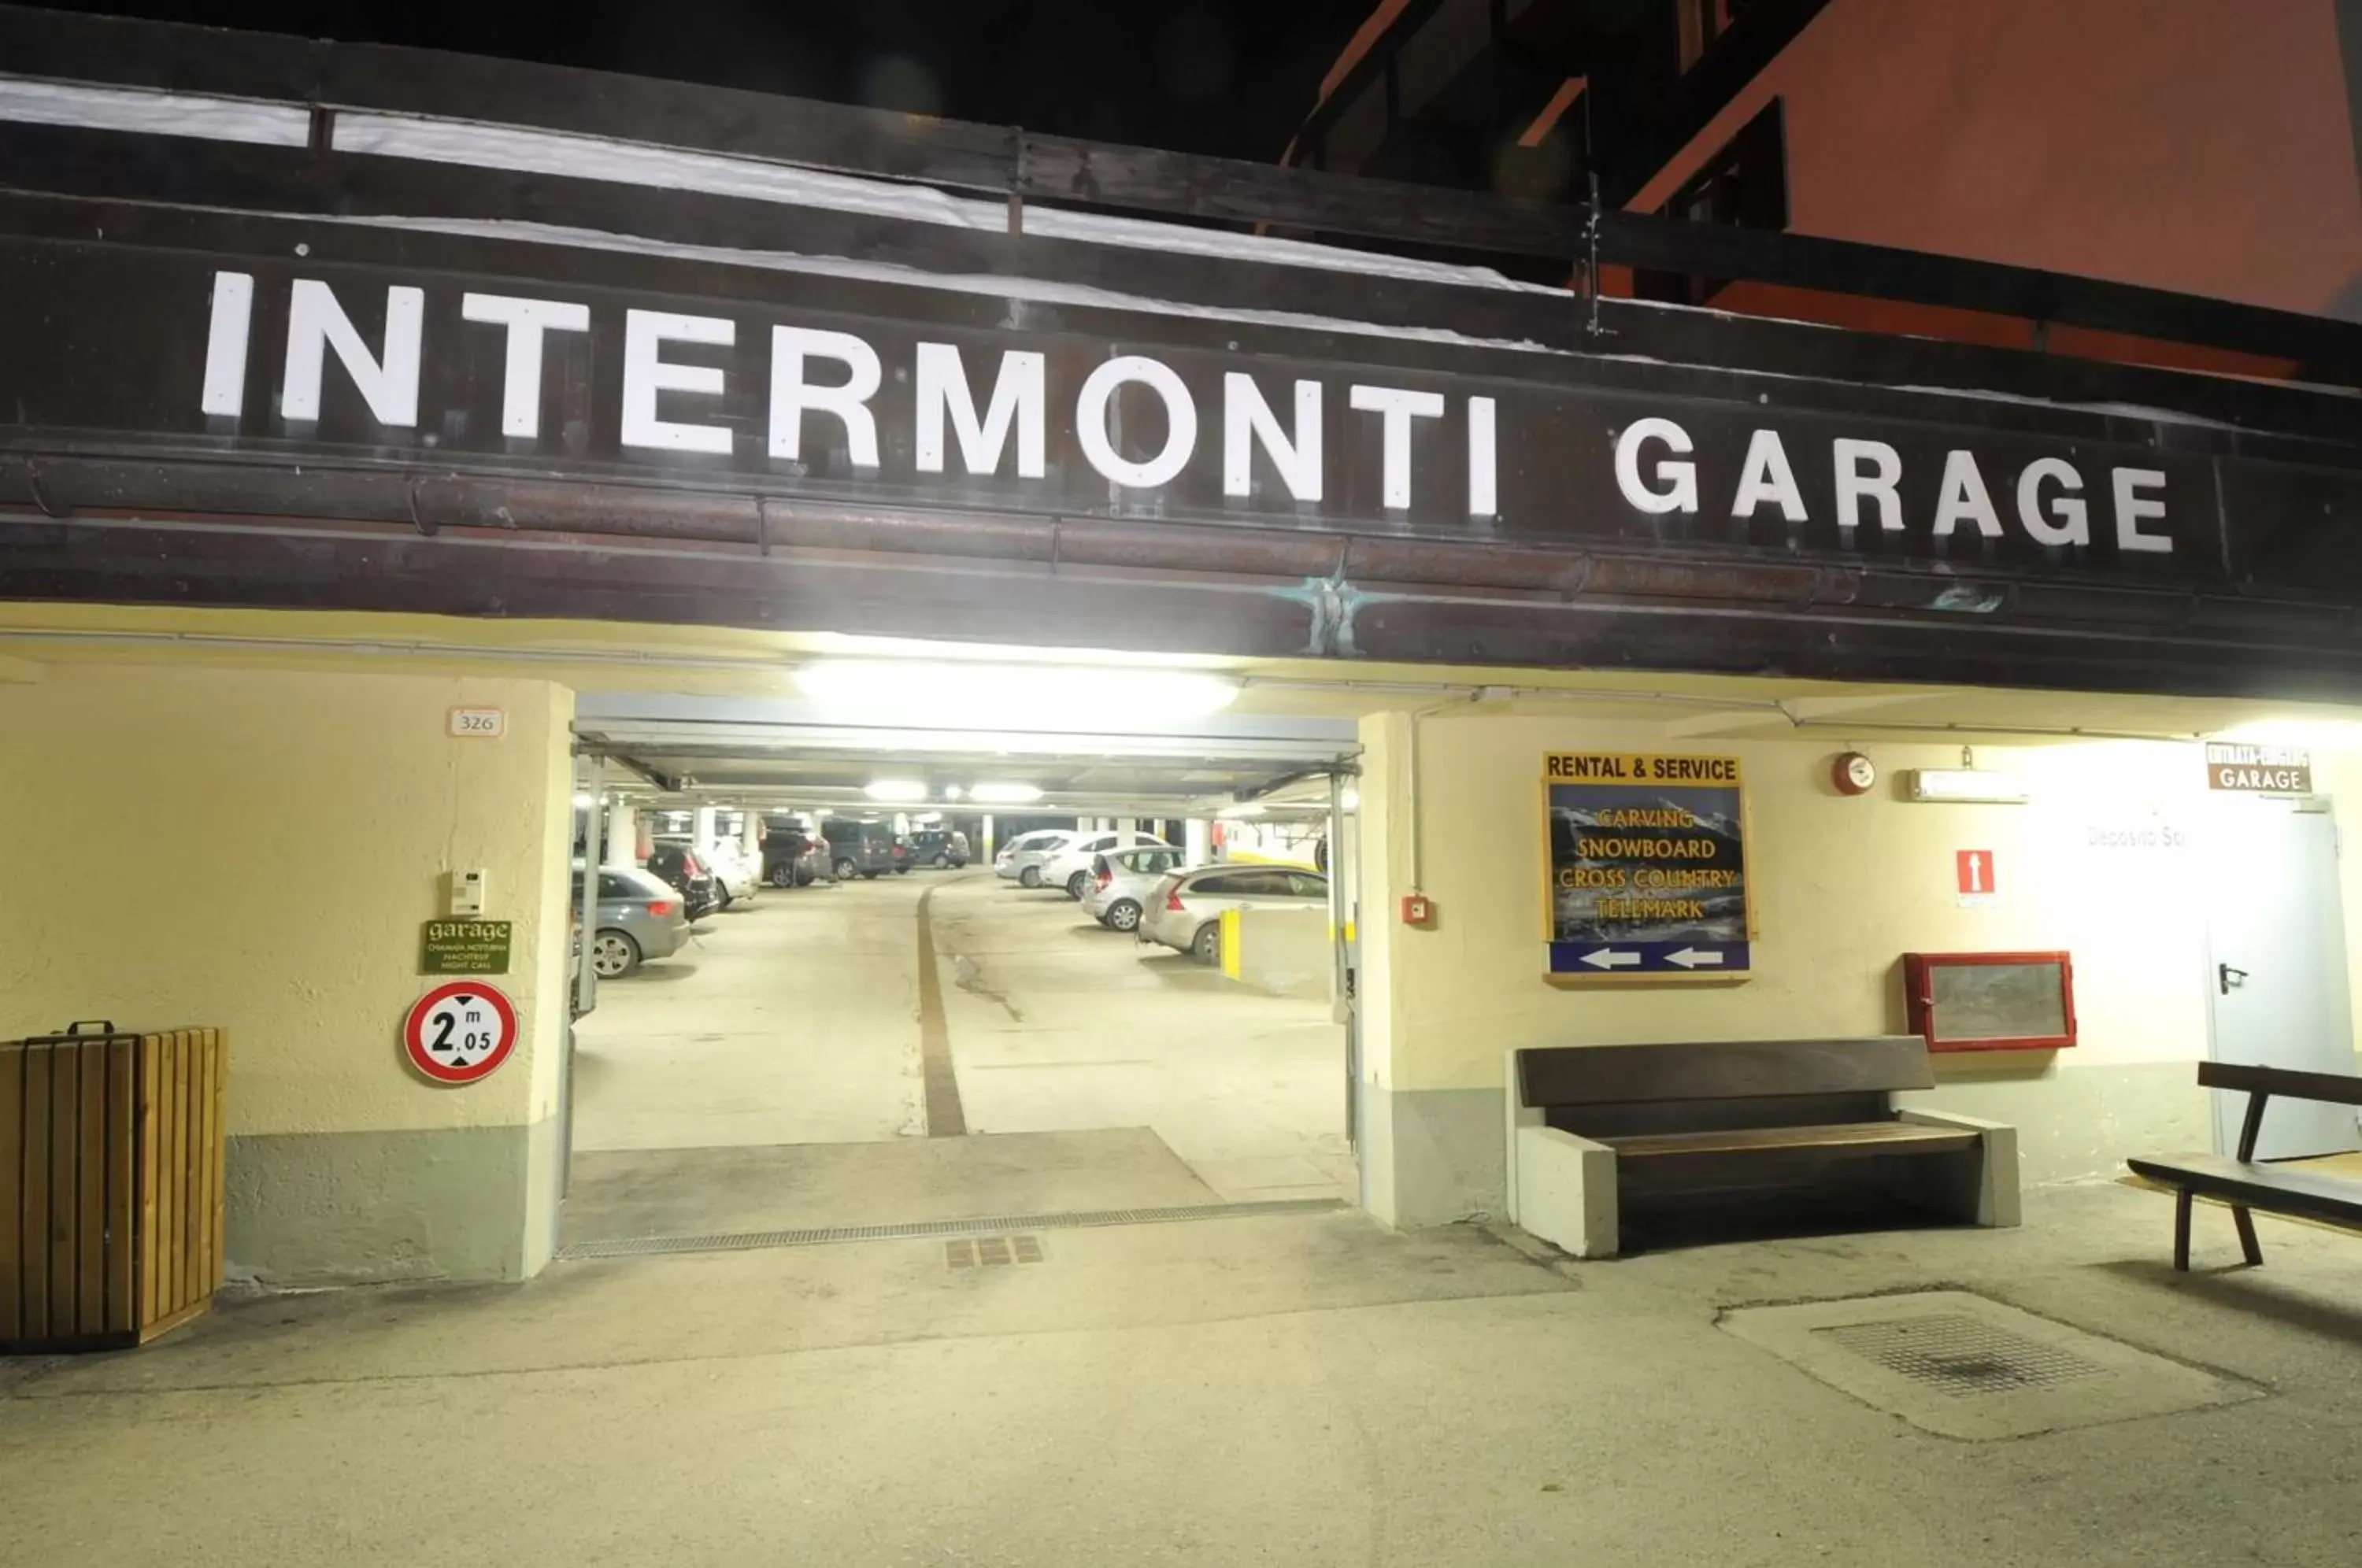 Area and facilities in Hotel Intermonti